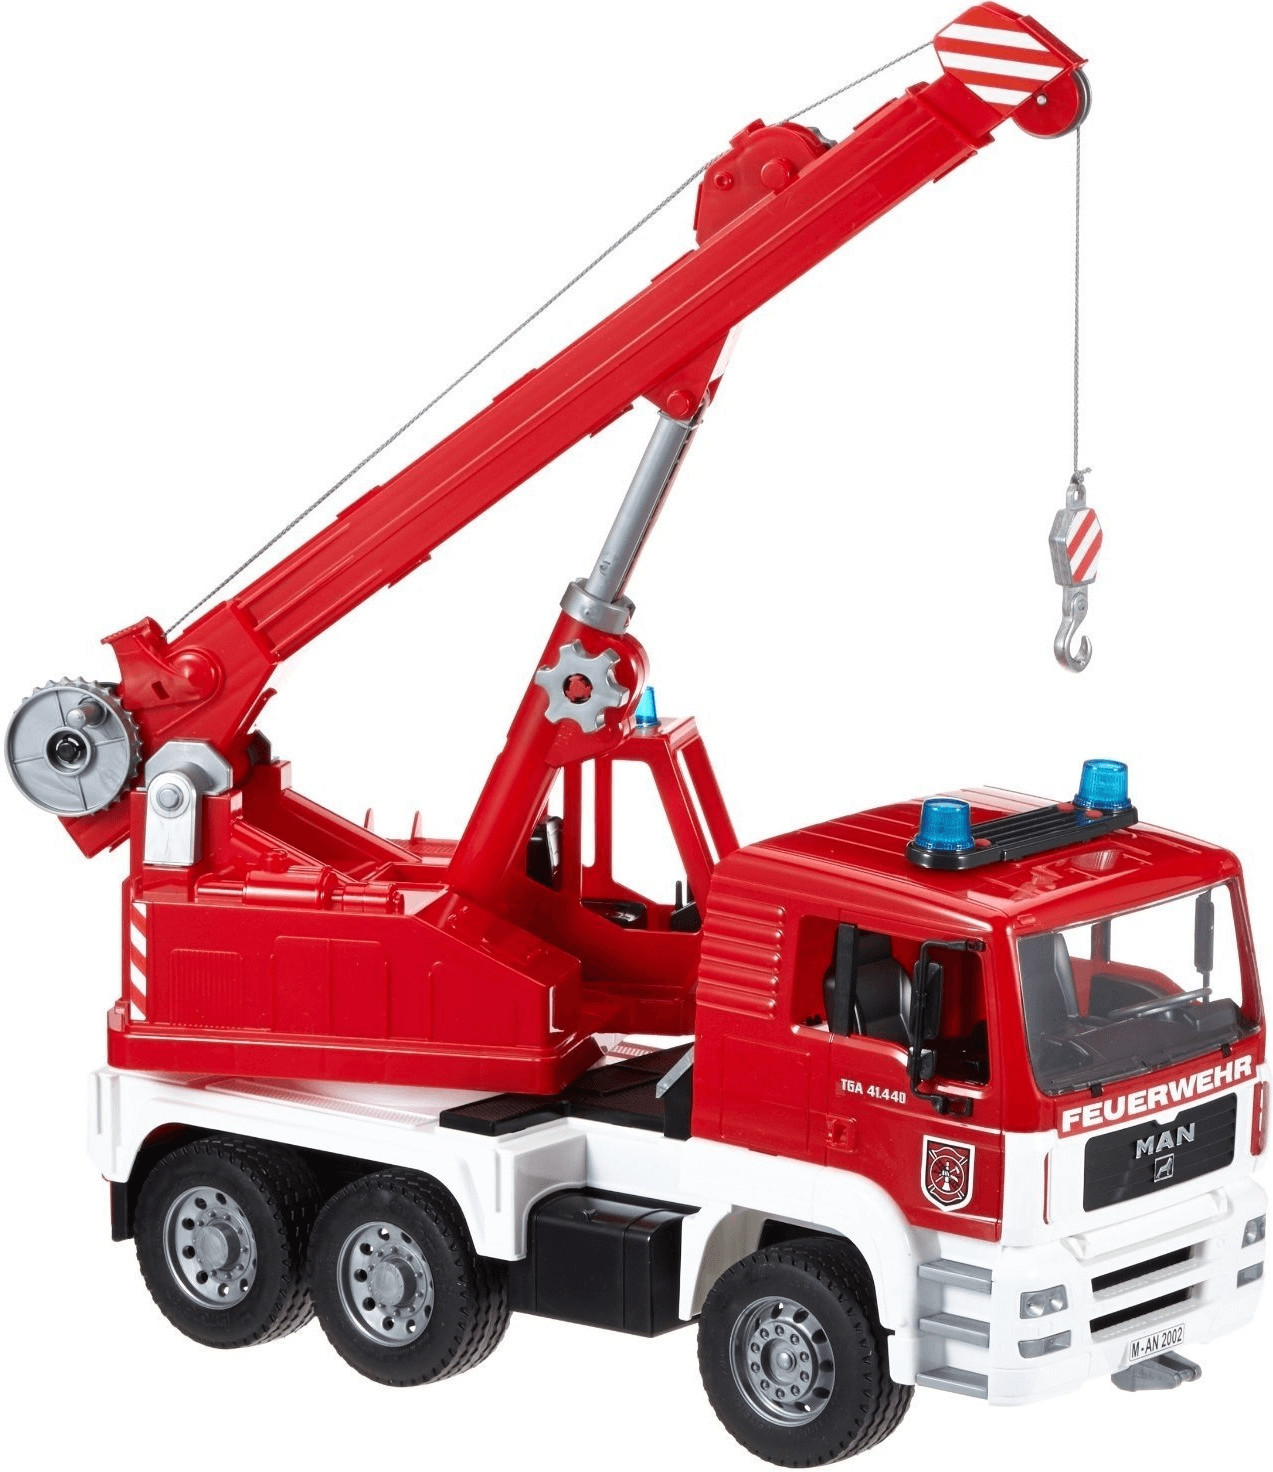 Bruder MAN Fire Engine Crane truck (02770)